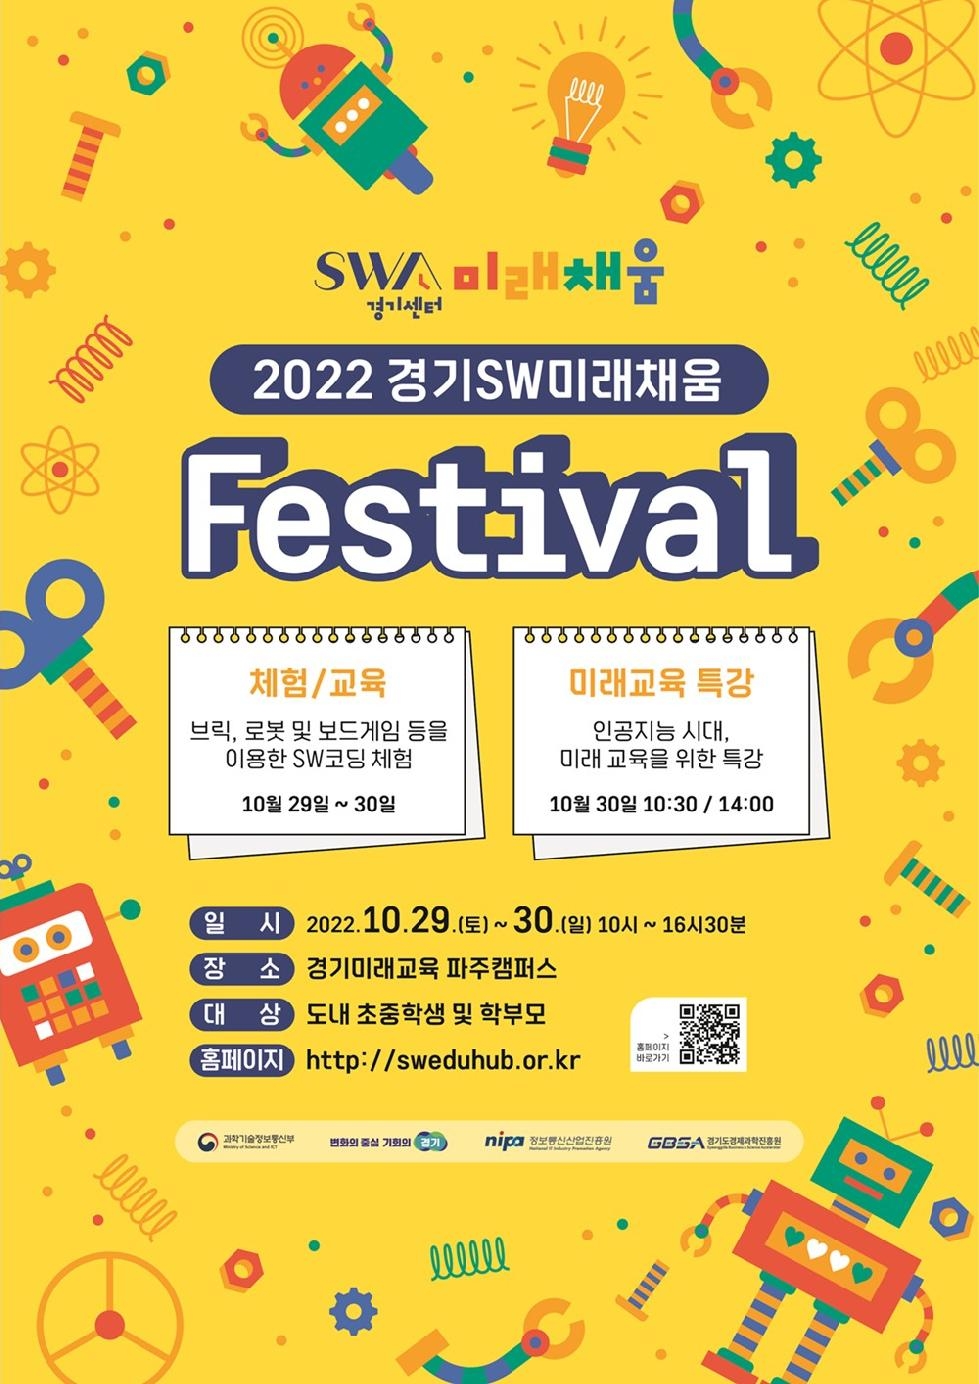 경기도, 29~30일 경기소프트웨어(SW)미래채움 페스티벌 개최. 소프트웨어 체험프로그램 